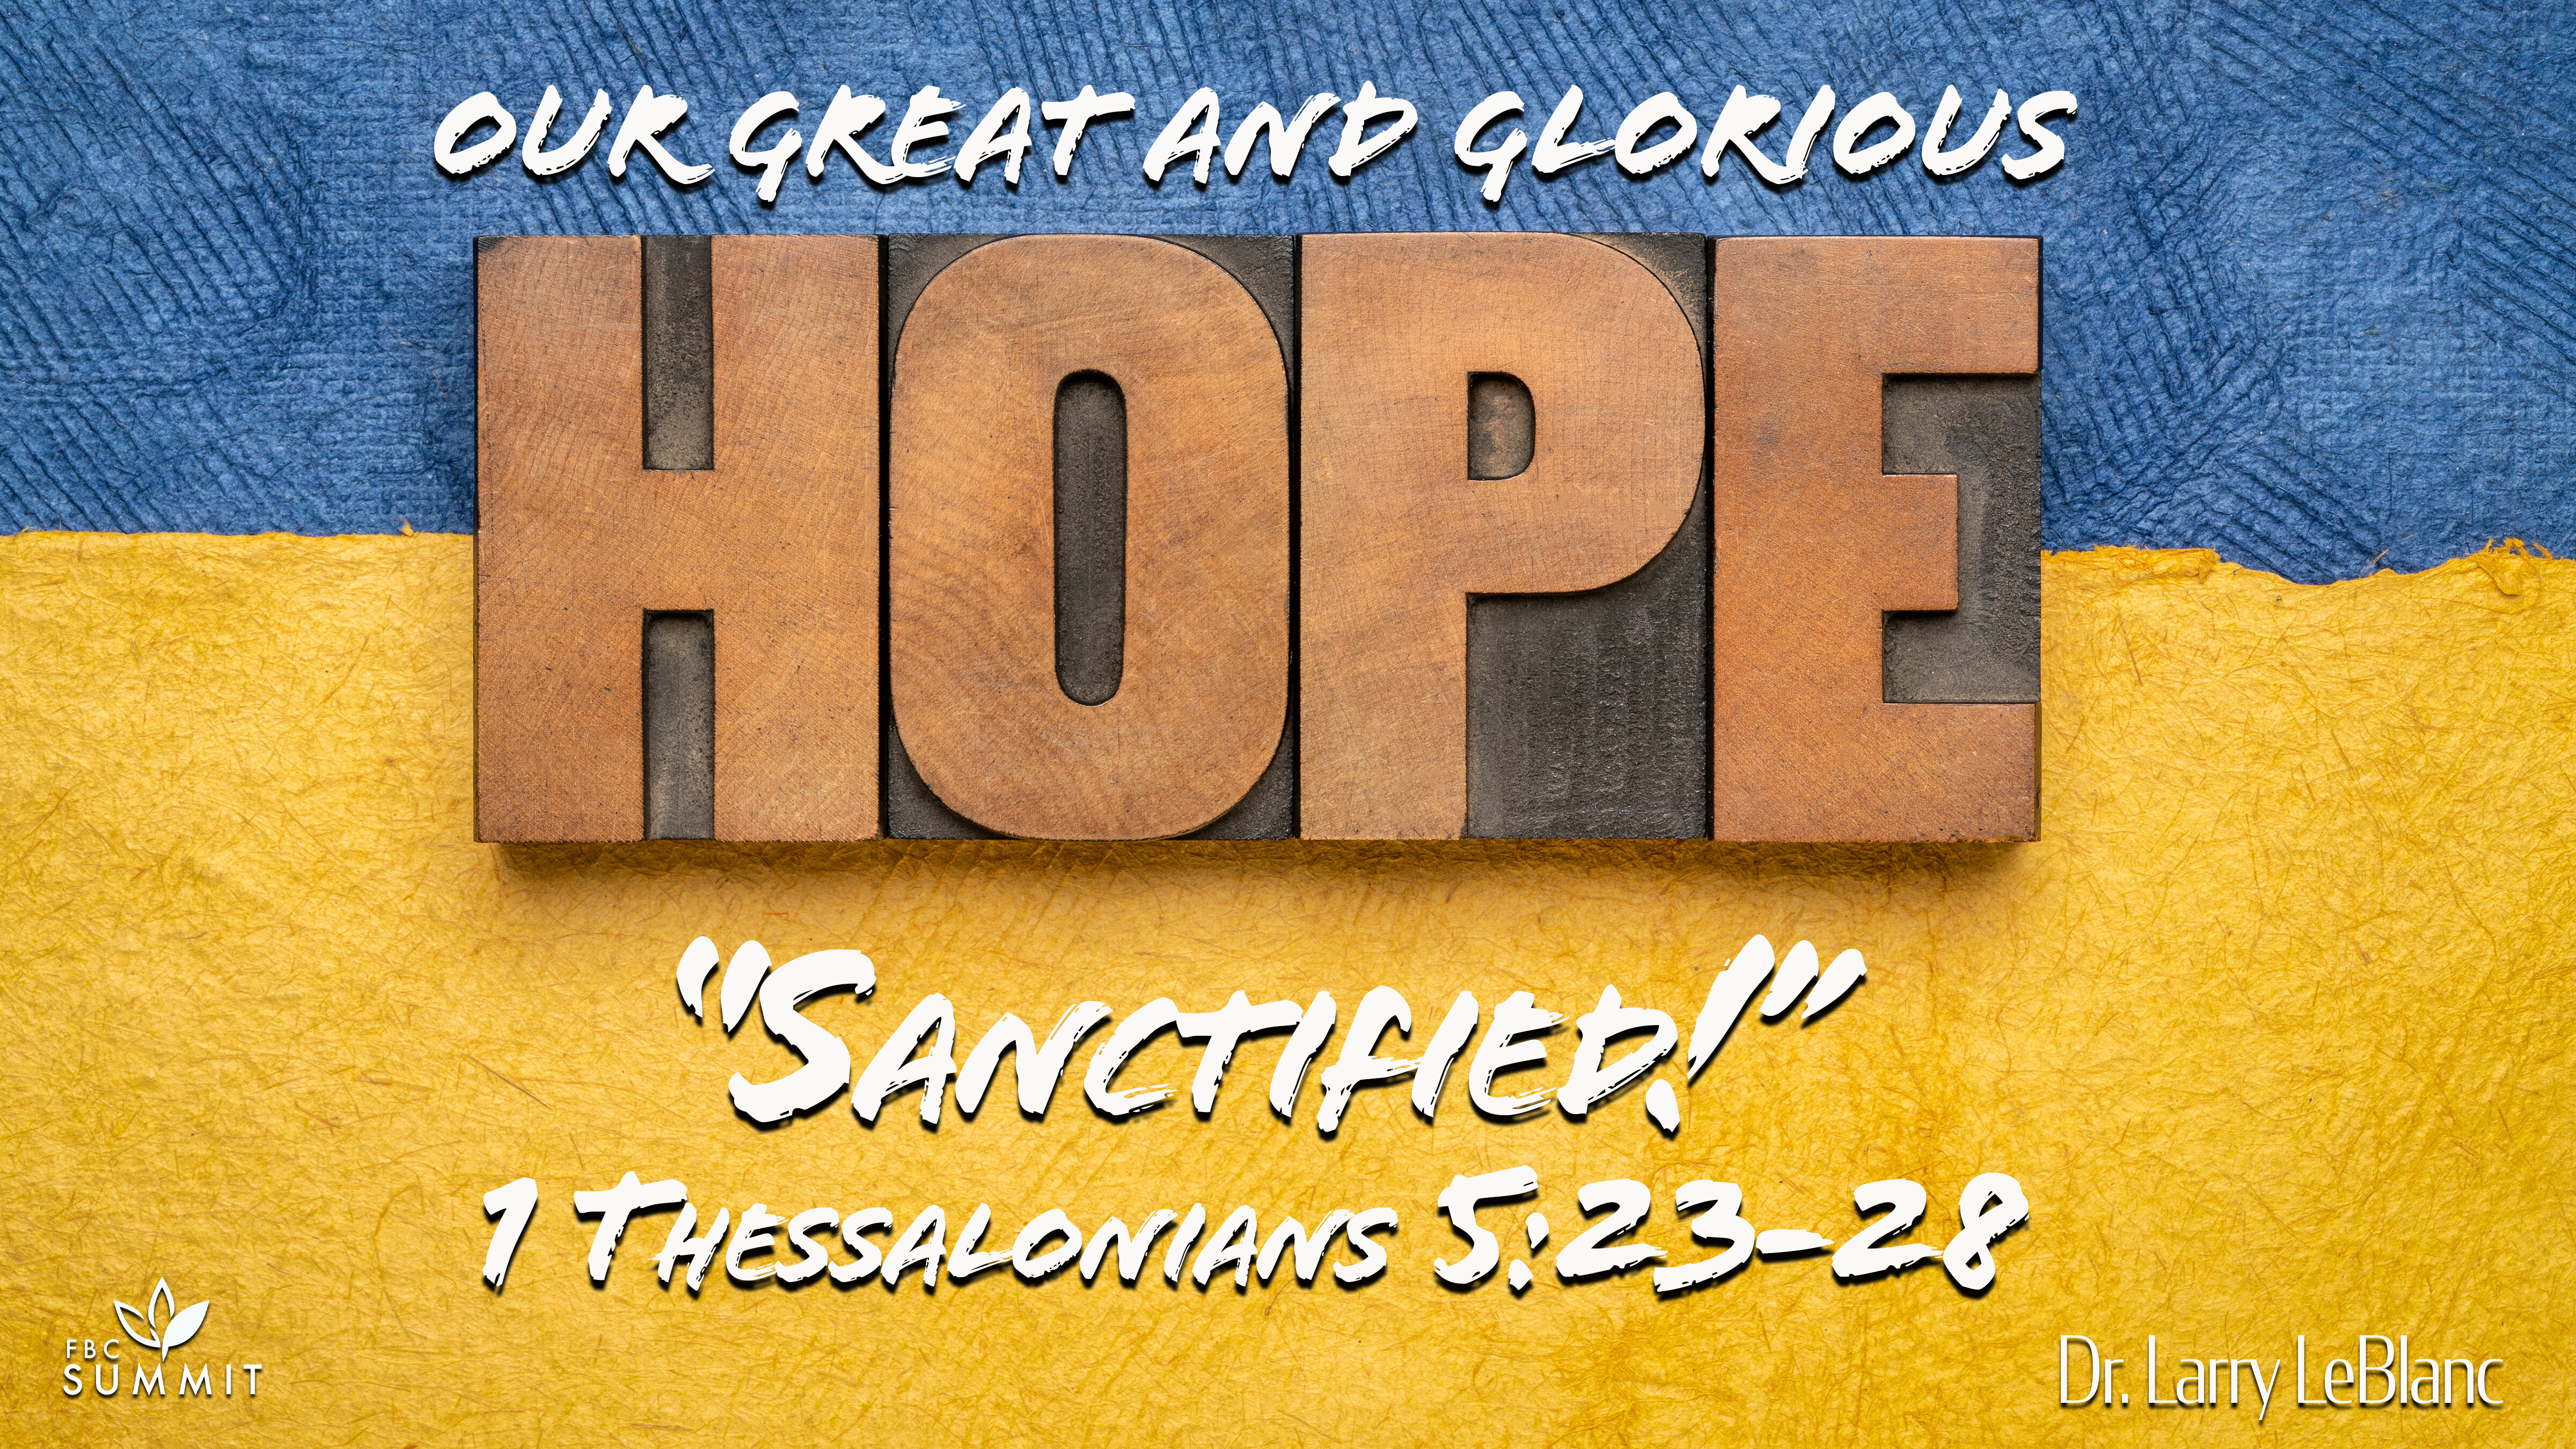 "Sanctified!" 1 Thessalonians 5:23-28 // Dr. Larry LeBlanc